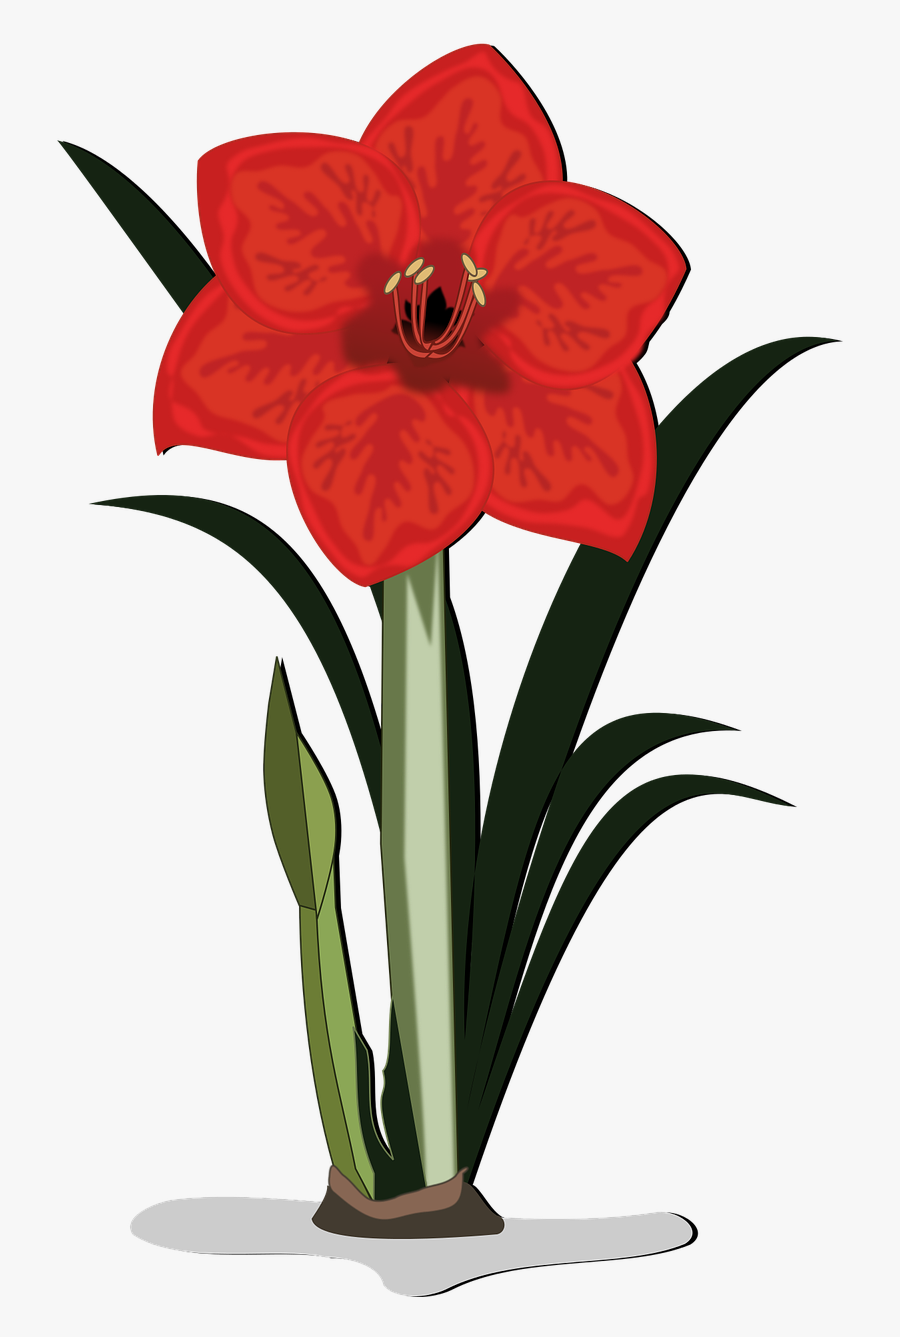 Amaryllis Clip Art Flor Free Picture - Amaryllis Clipart, Transparent Clipart